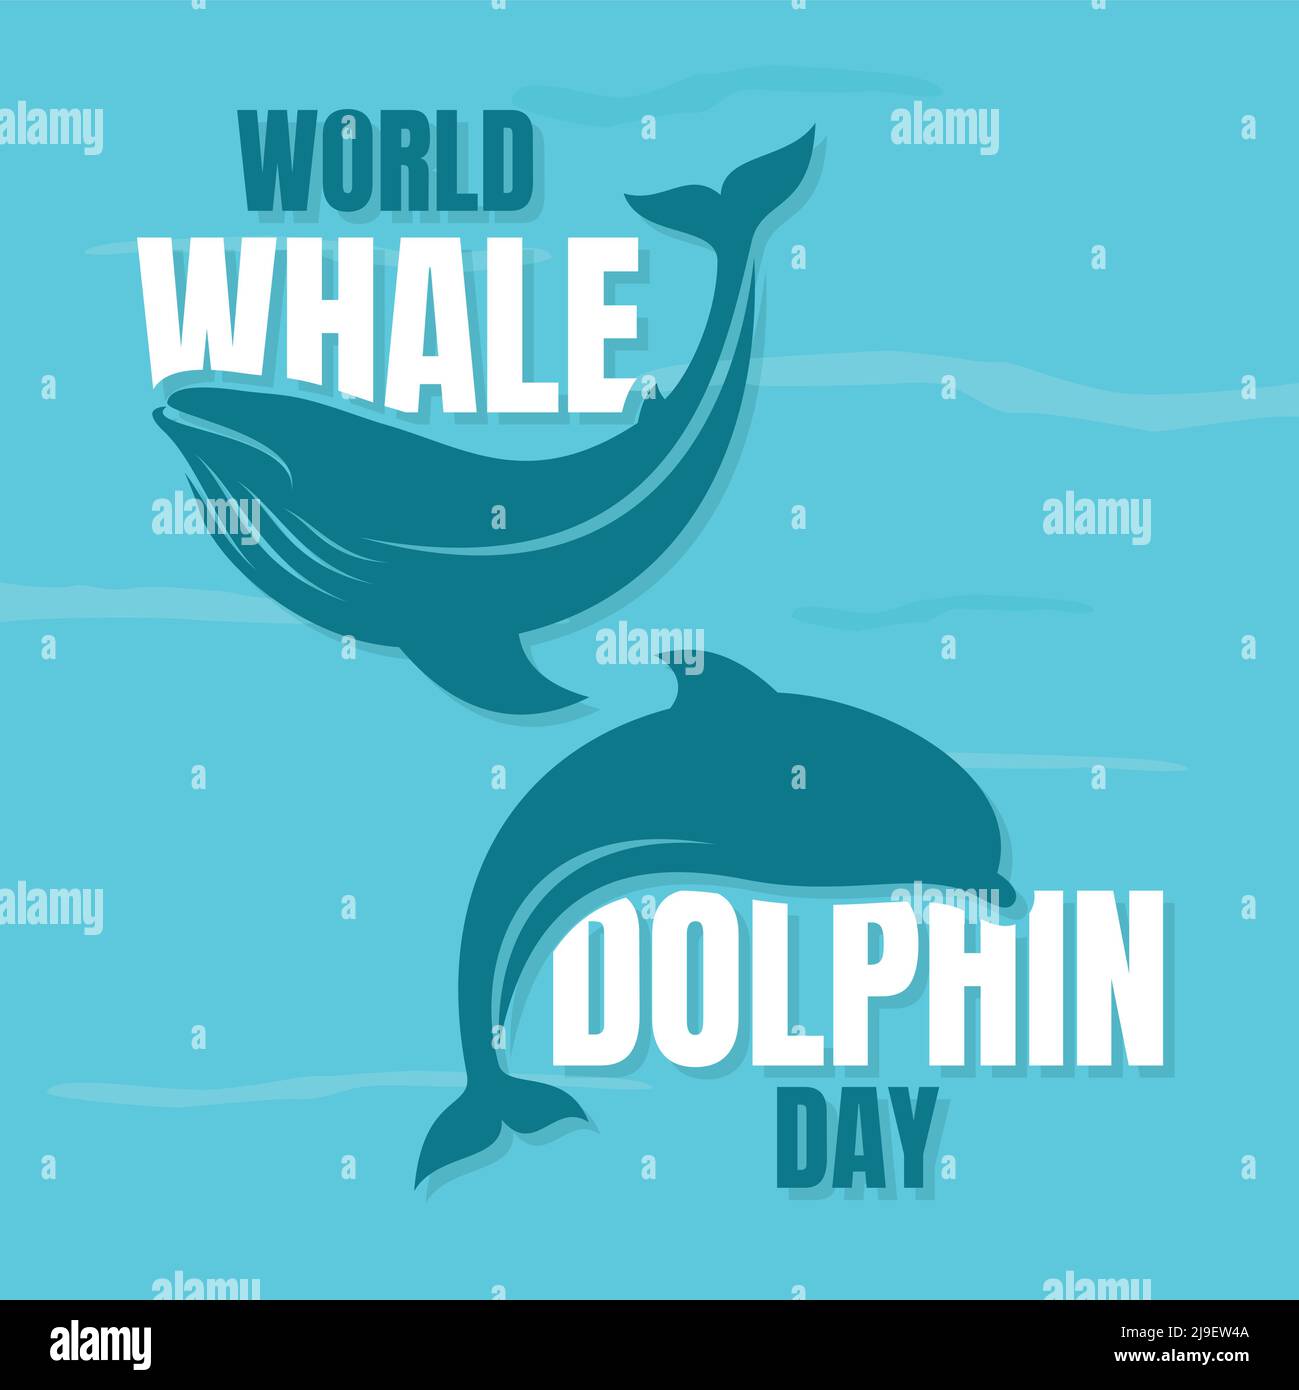 World Whale und Dolphin Day kreativer Hintergrund. Vektorgrafik EPS.8 EPS.10 Stock Vektor